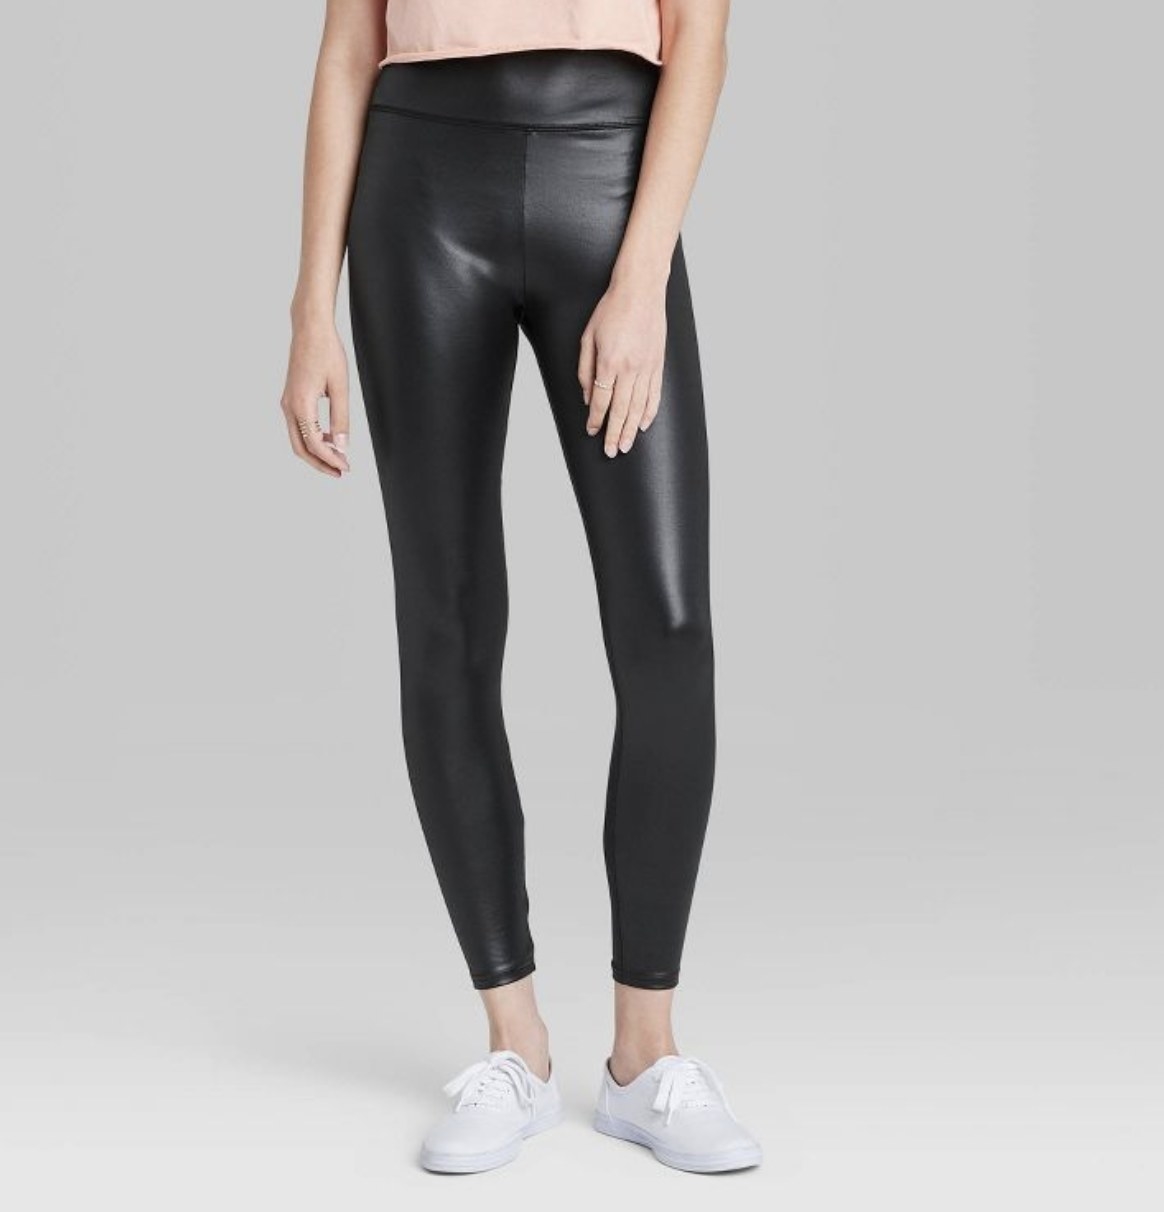 Model wearing faux leather leggings